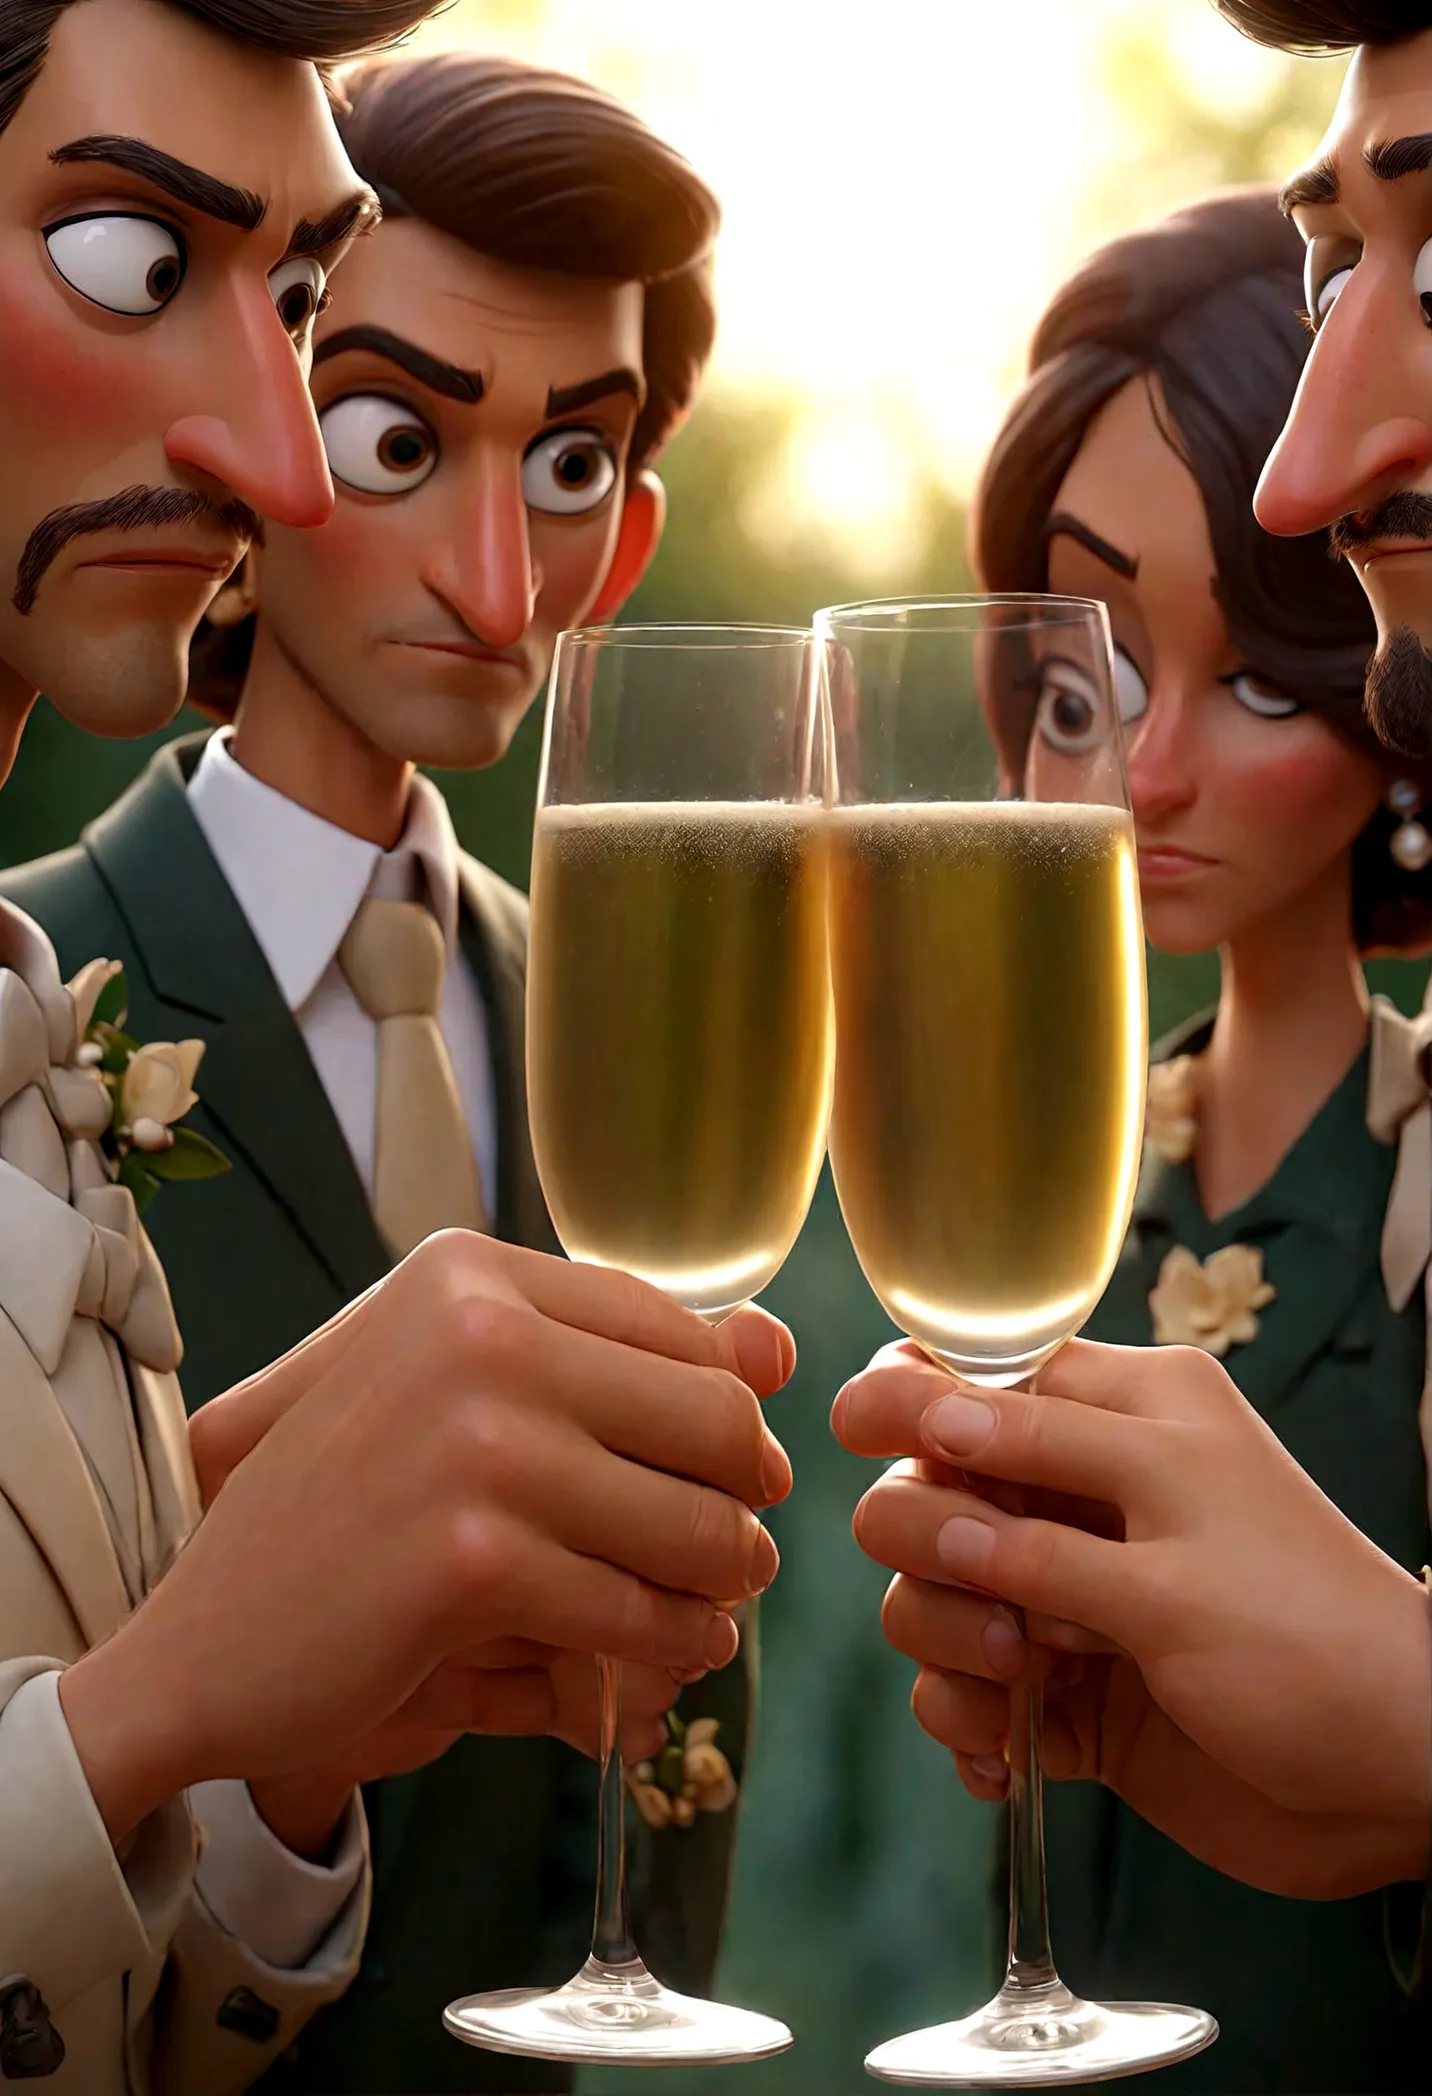 amigos juntos olhando para a foto, hands together holding a glass of champagne
